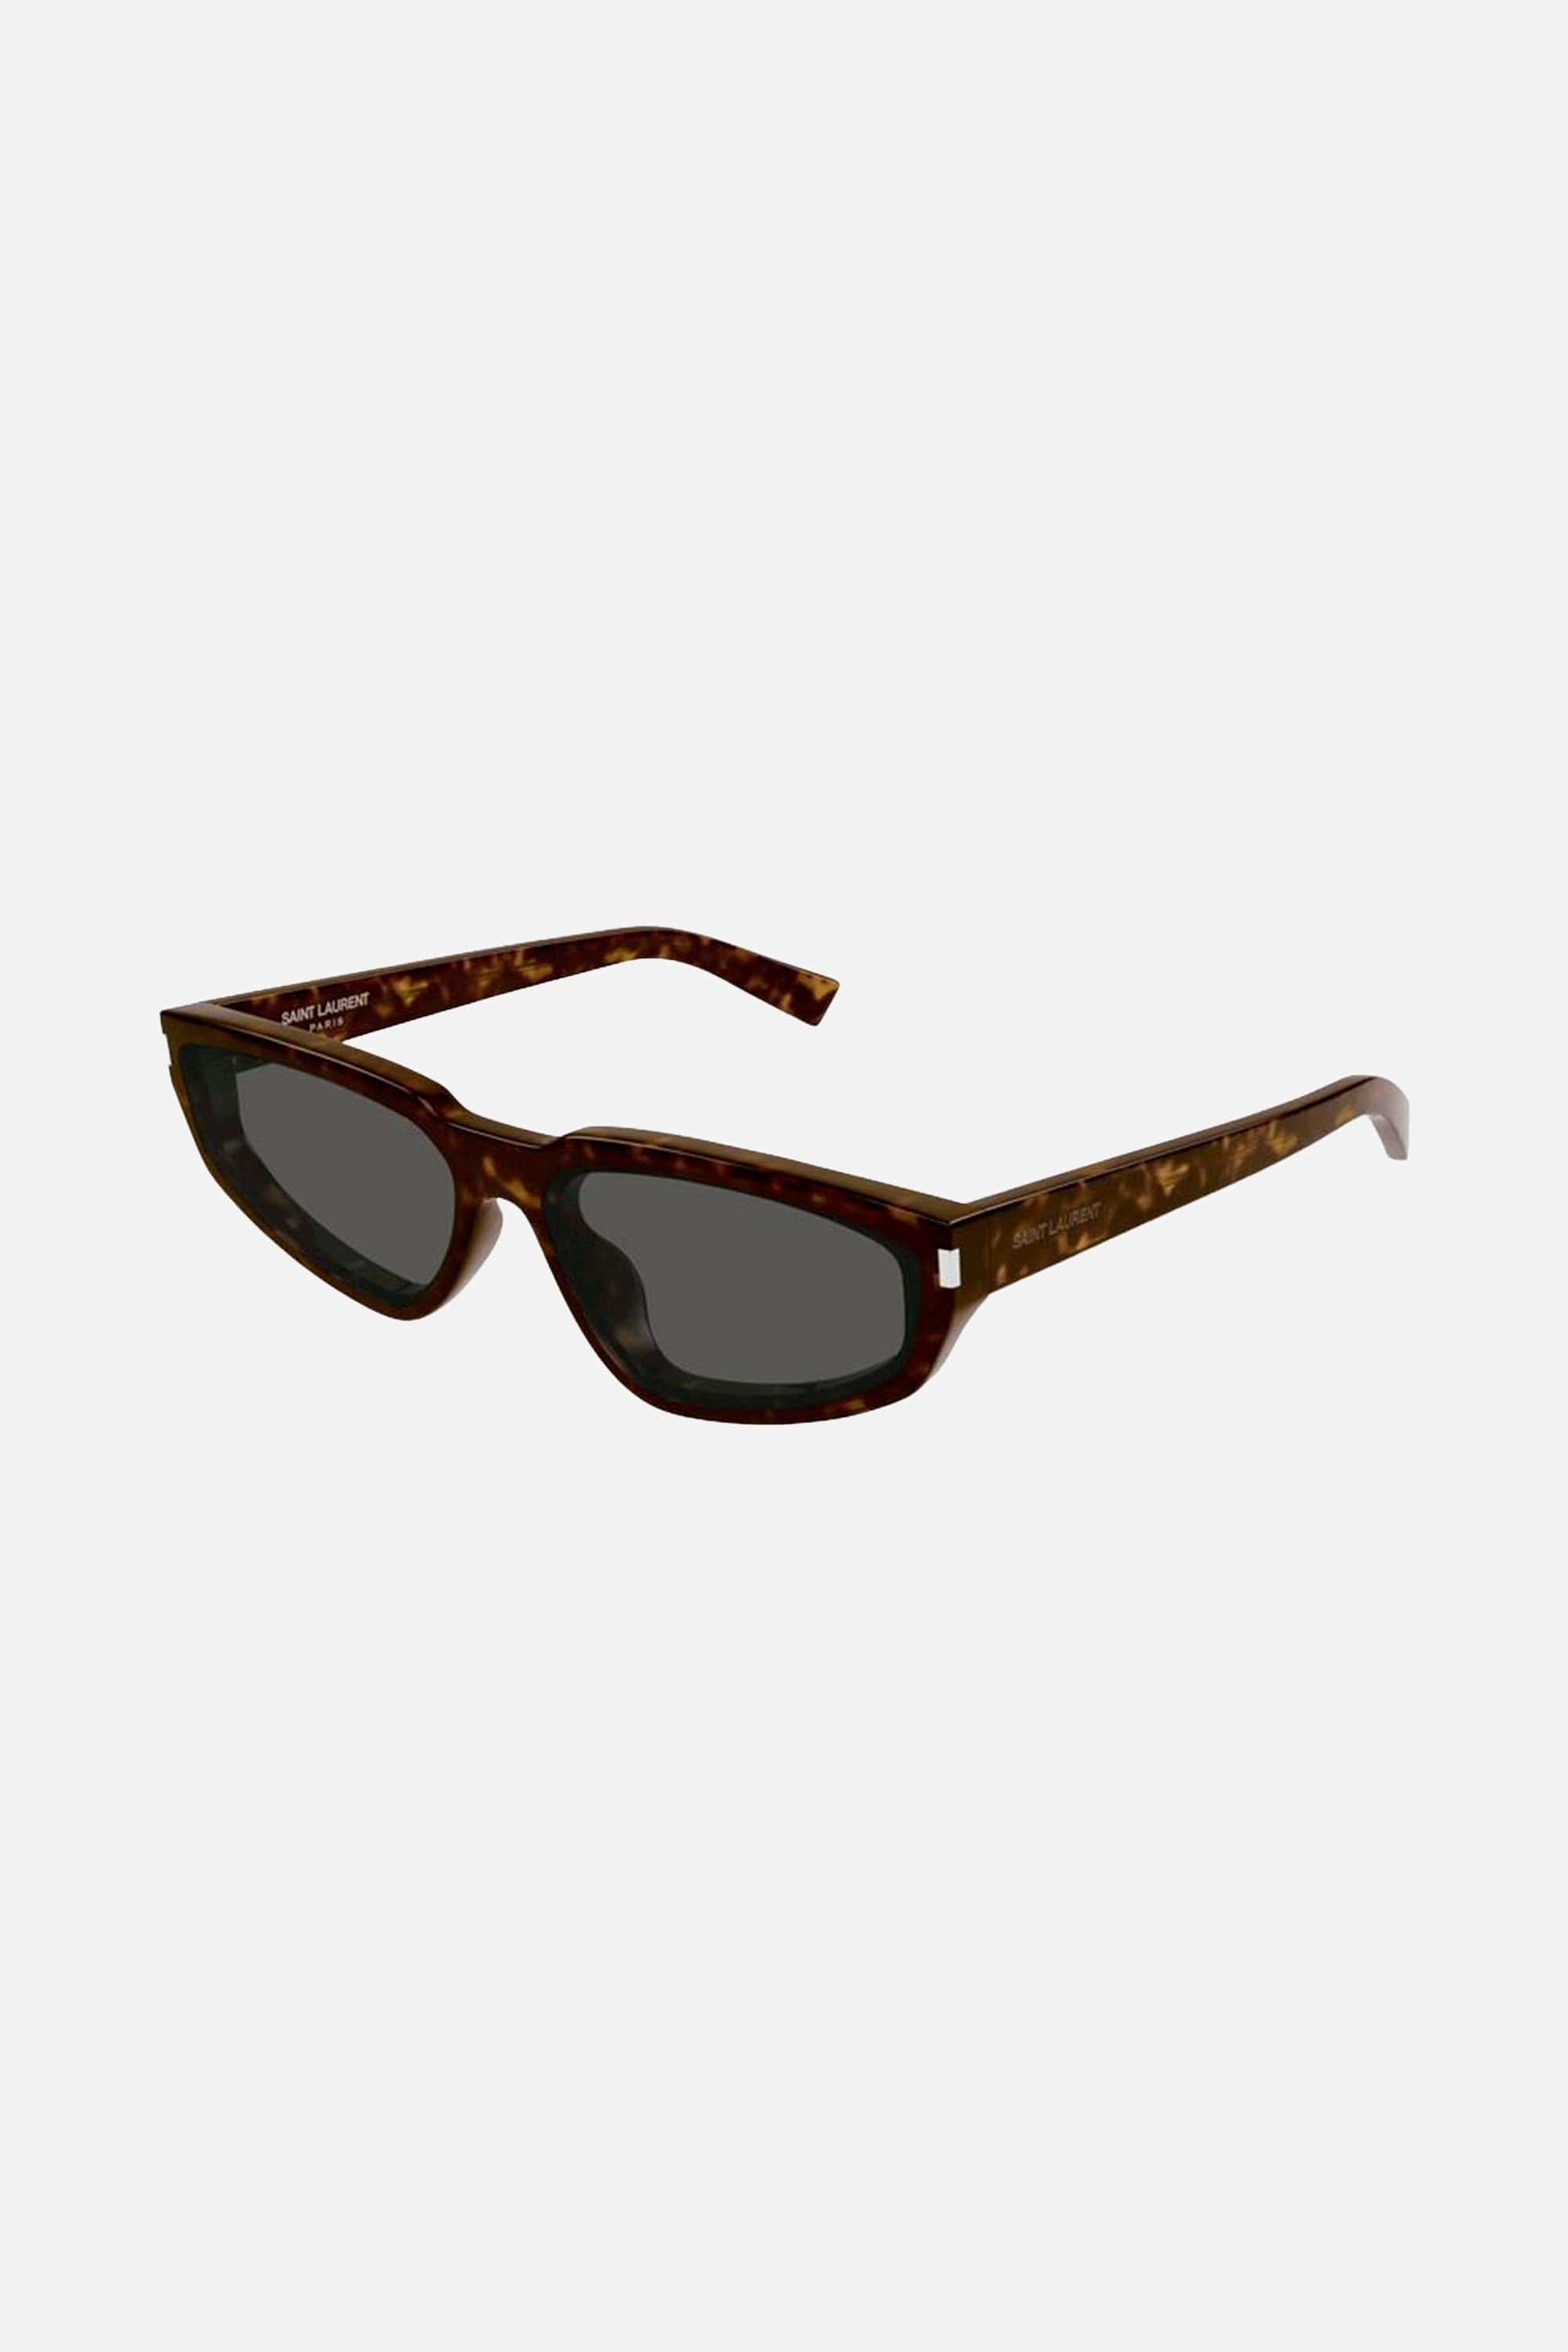 Saint Laurent SL 634 NOVA oval dark havana sunglasses - Eyewear Club